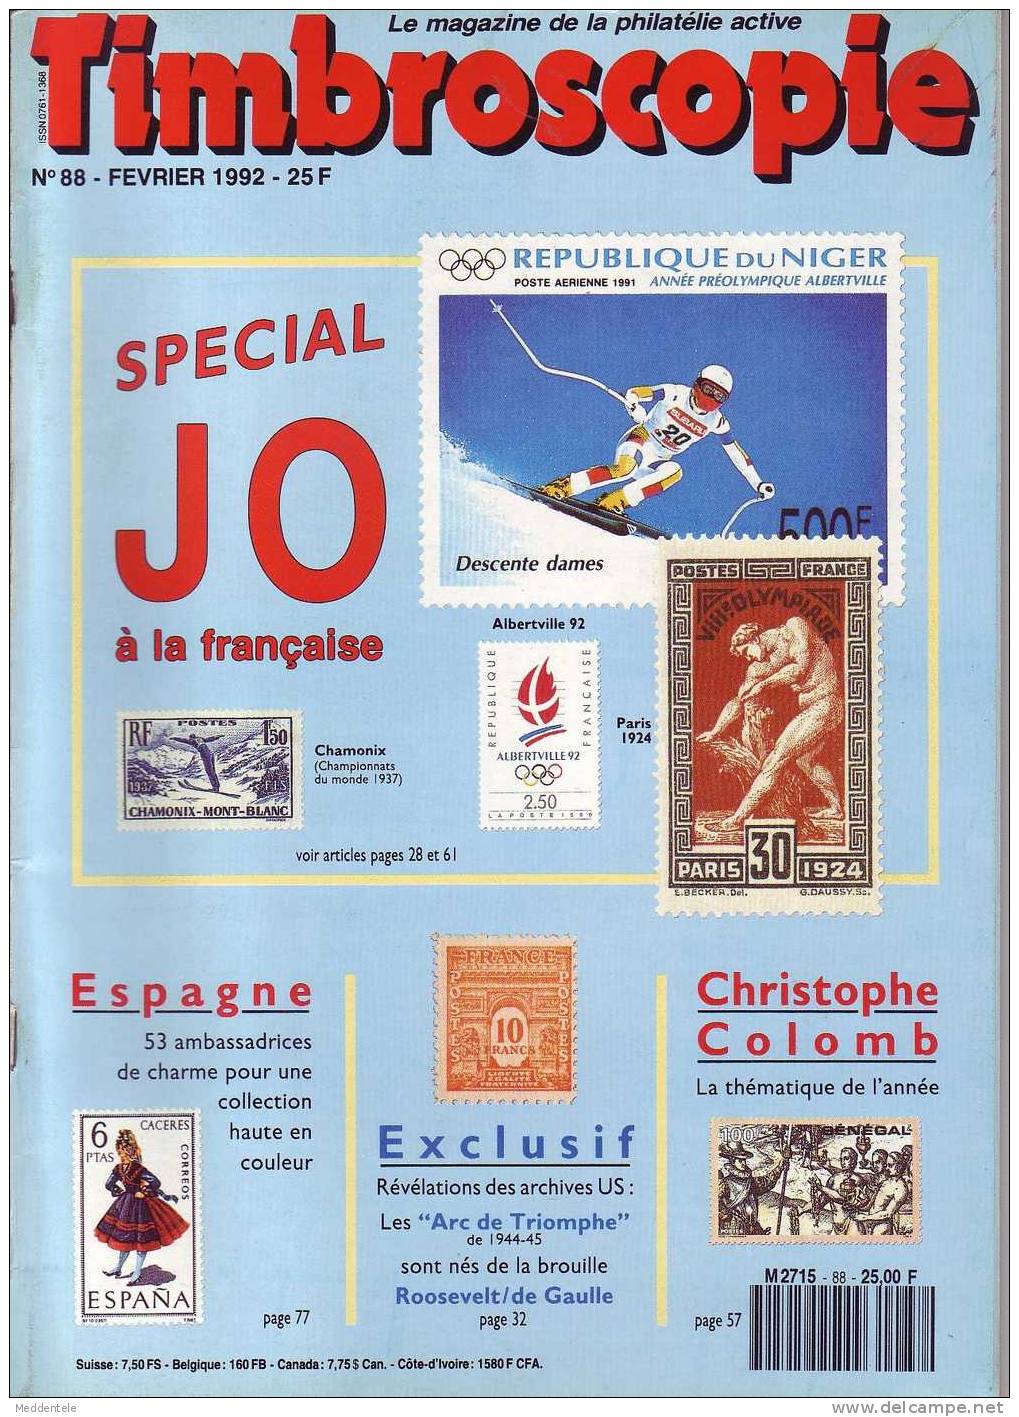 Timbroscopie N 88 Fev 1992 Special Jeux Olympiques JO - Français (àpd. 1941)